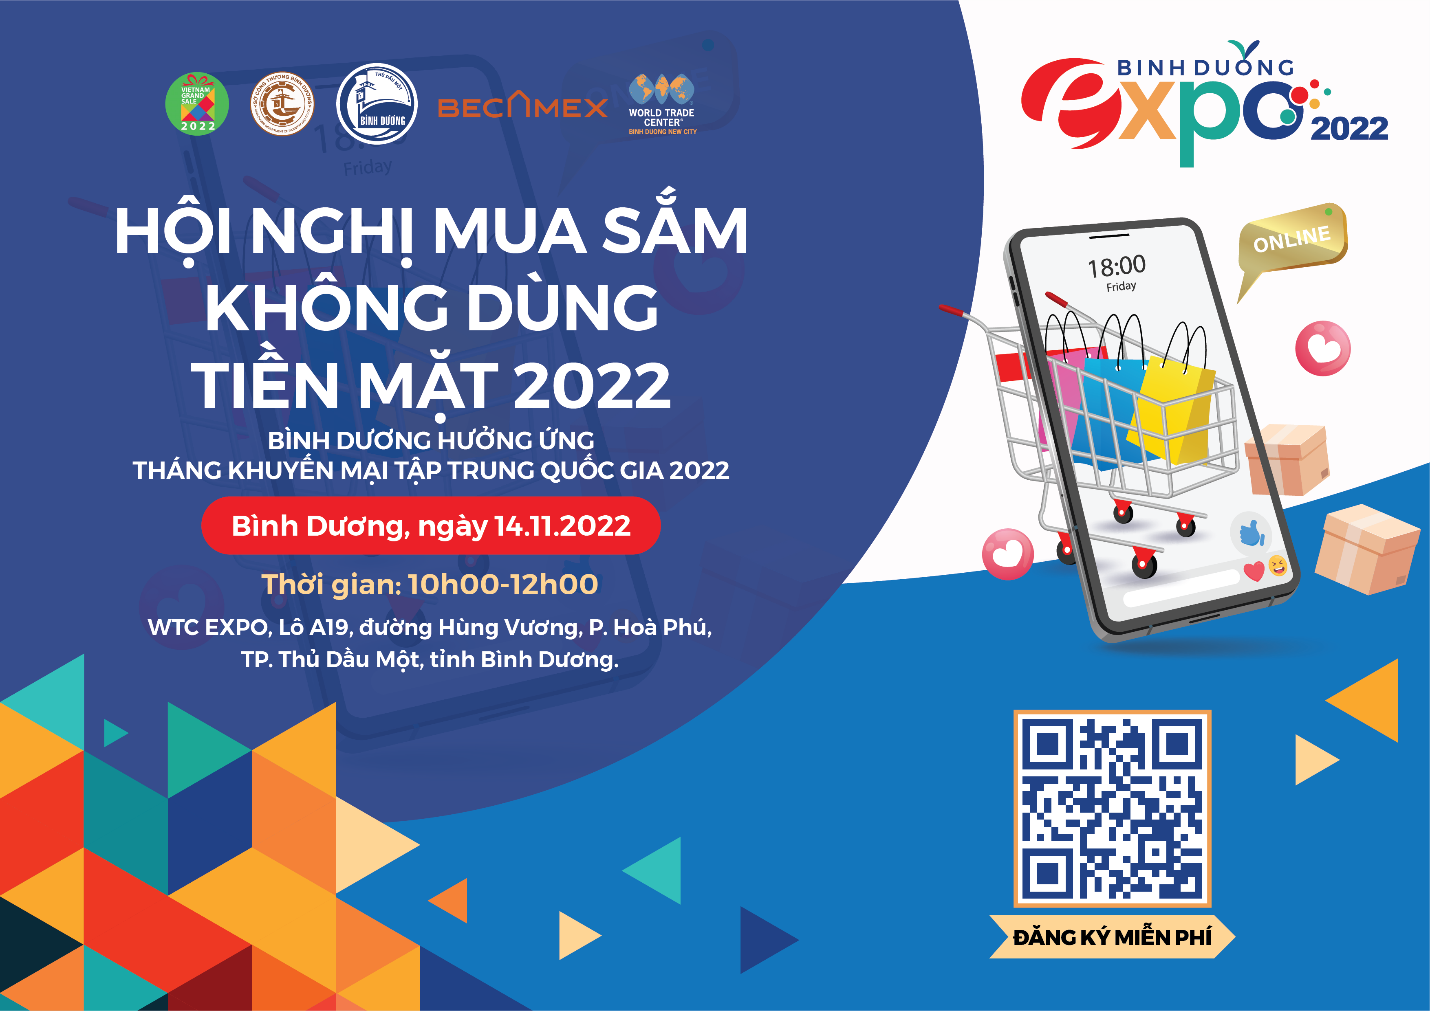 Bình Dương phát động hưởng ứng chương trình “Tháng khuyến mại tập trung quốc gia 2022 - Vietnam Grand Sale 2022 –